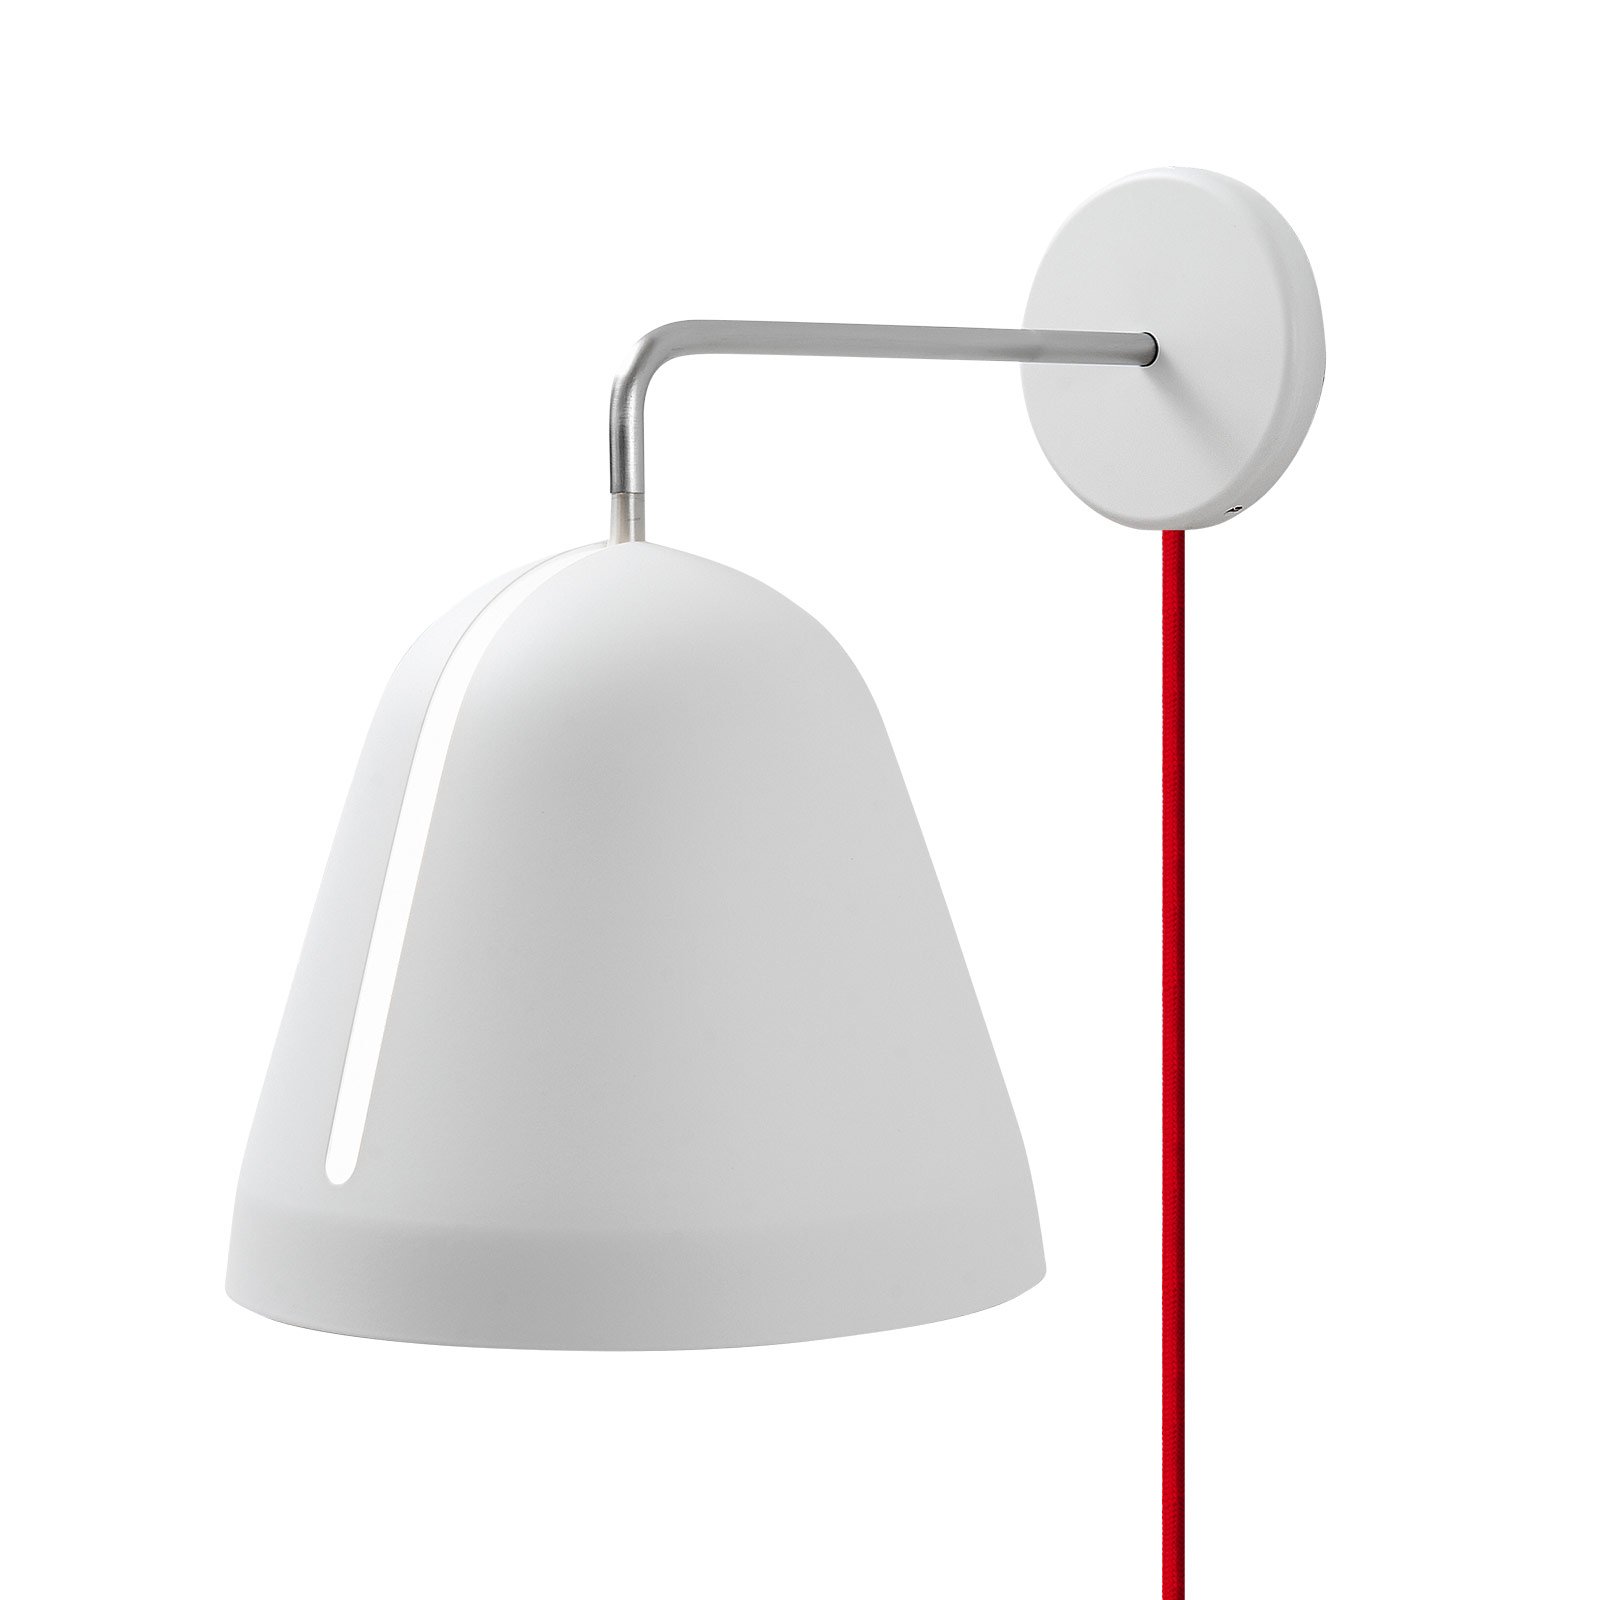 Nyta Tilt Wall lampa ścienna kabel czerwony, biała